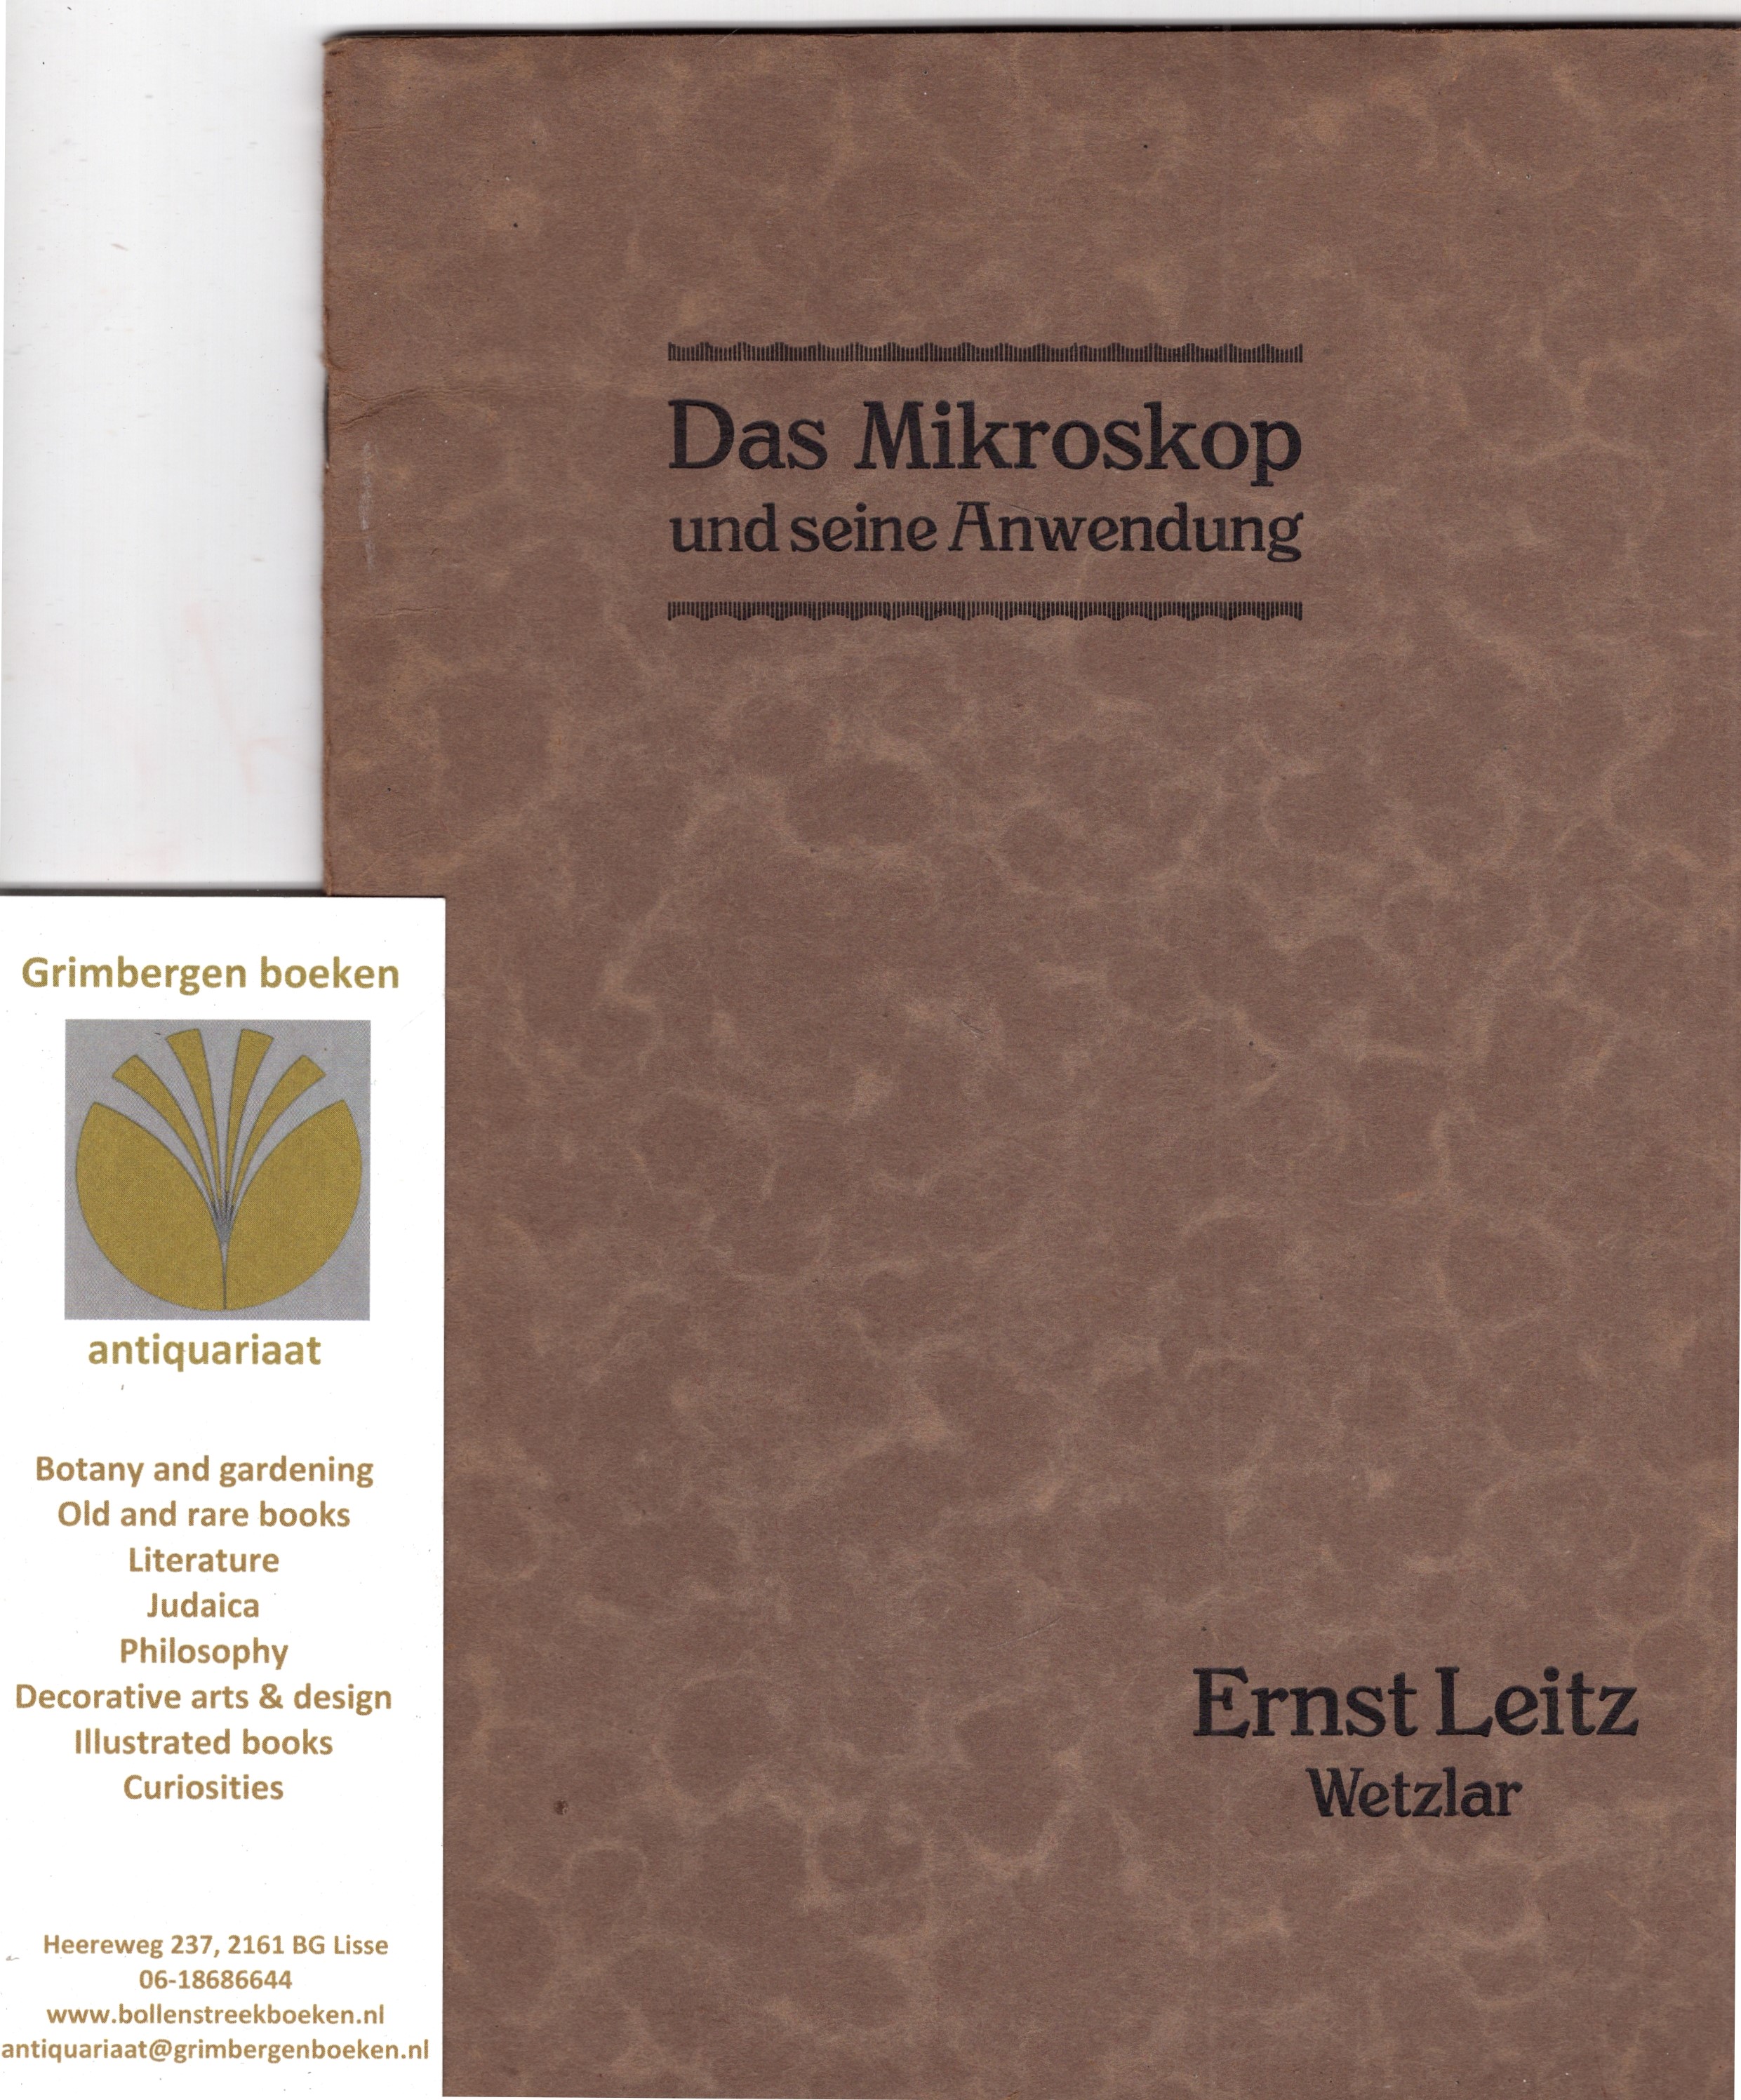 Leitz, Ernst - Das Mikroskop und seine Anwendung